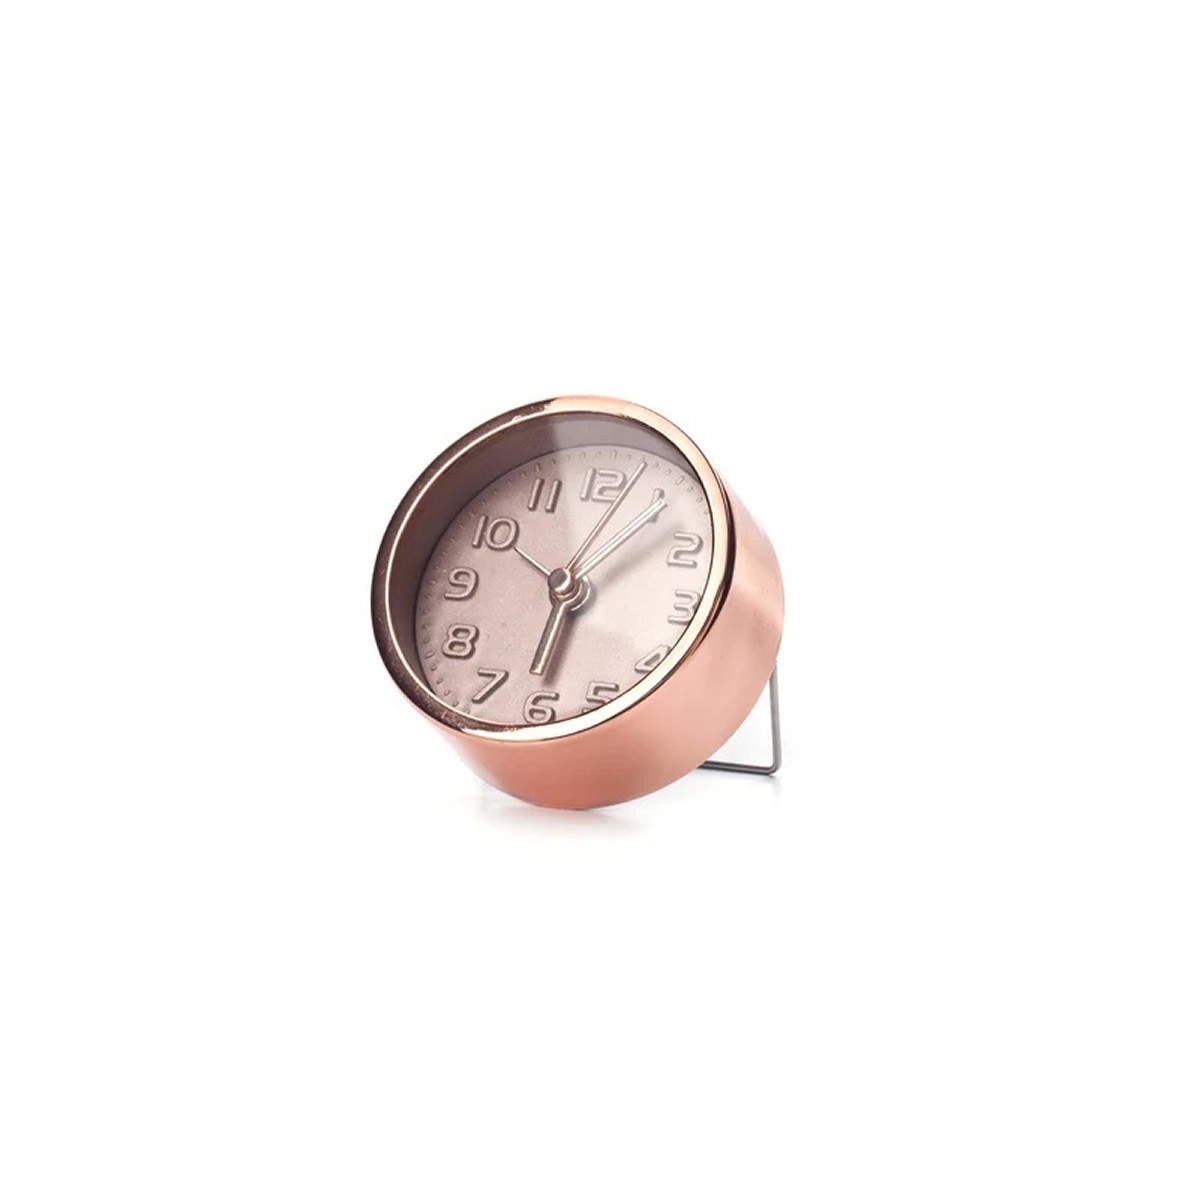 KIKKERLAND Copper Επιτραπέζιο Ρολόι-Ξυπνητήρι Ροζ- Χρυσό